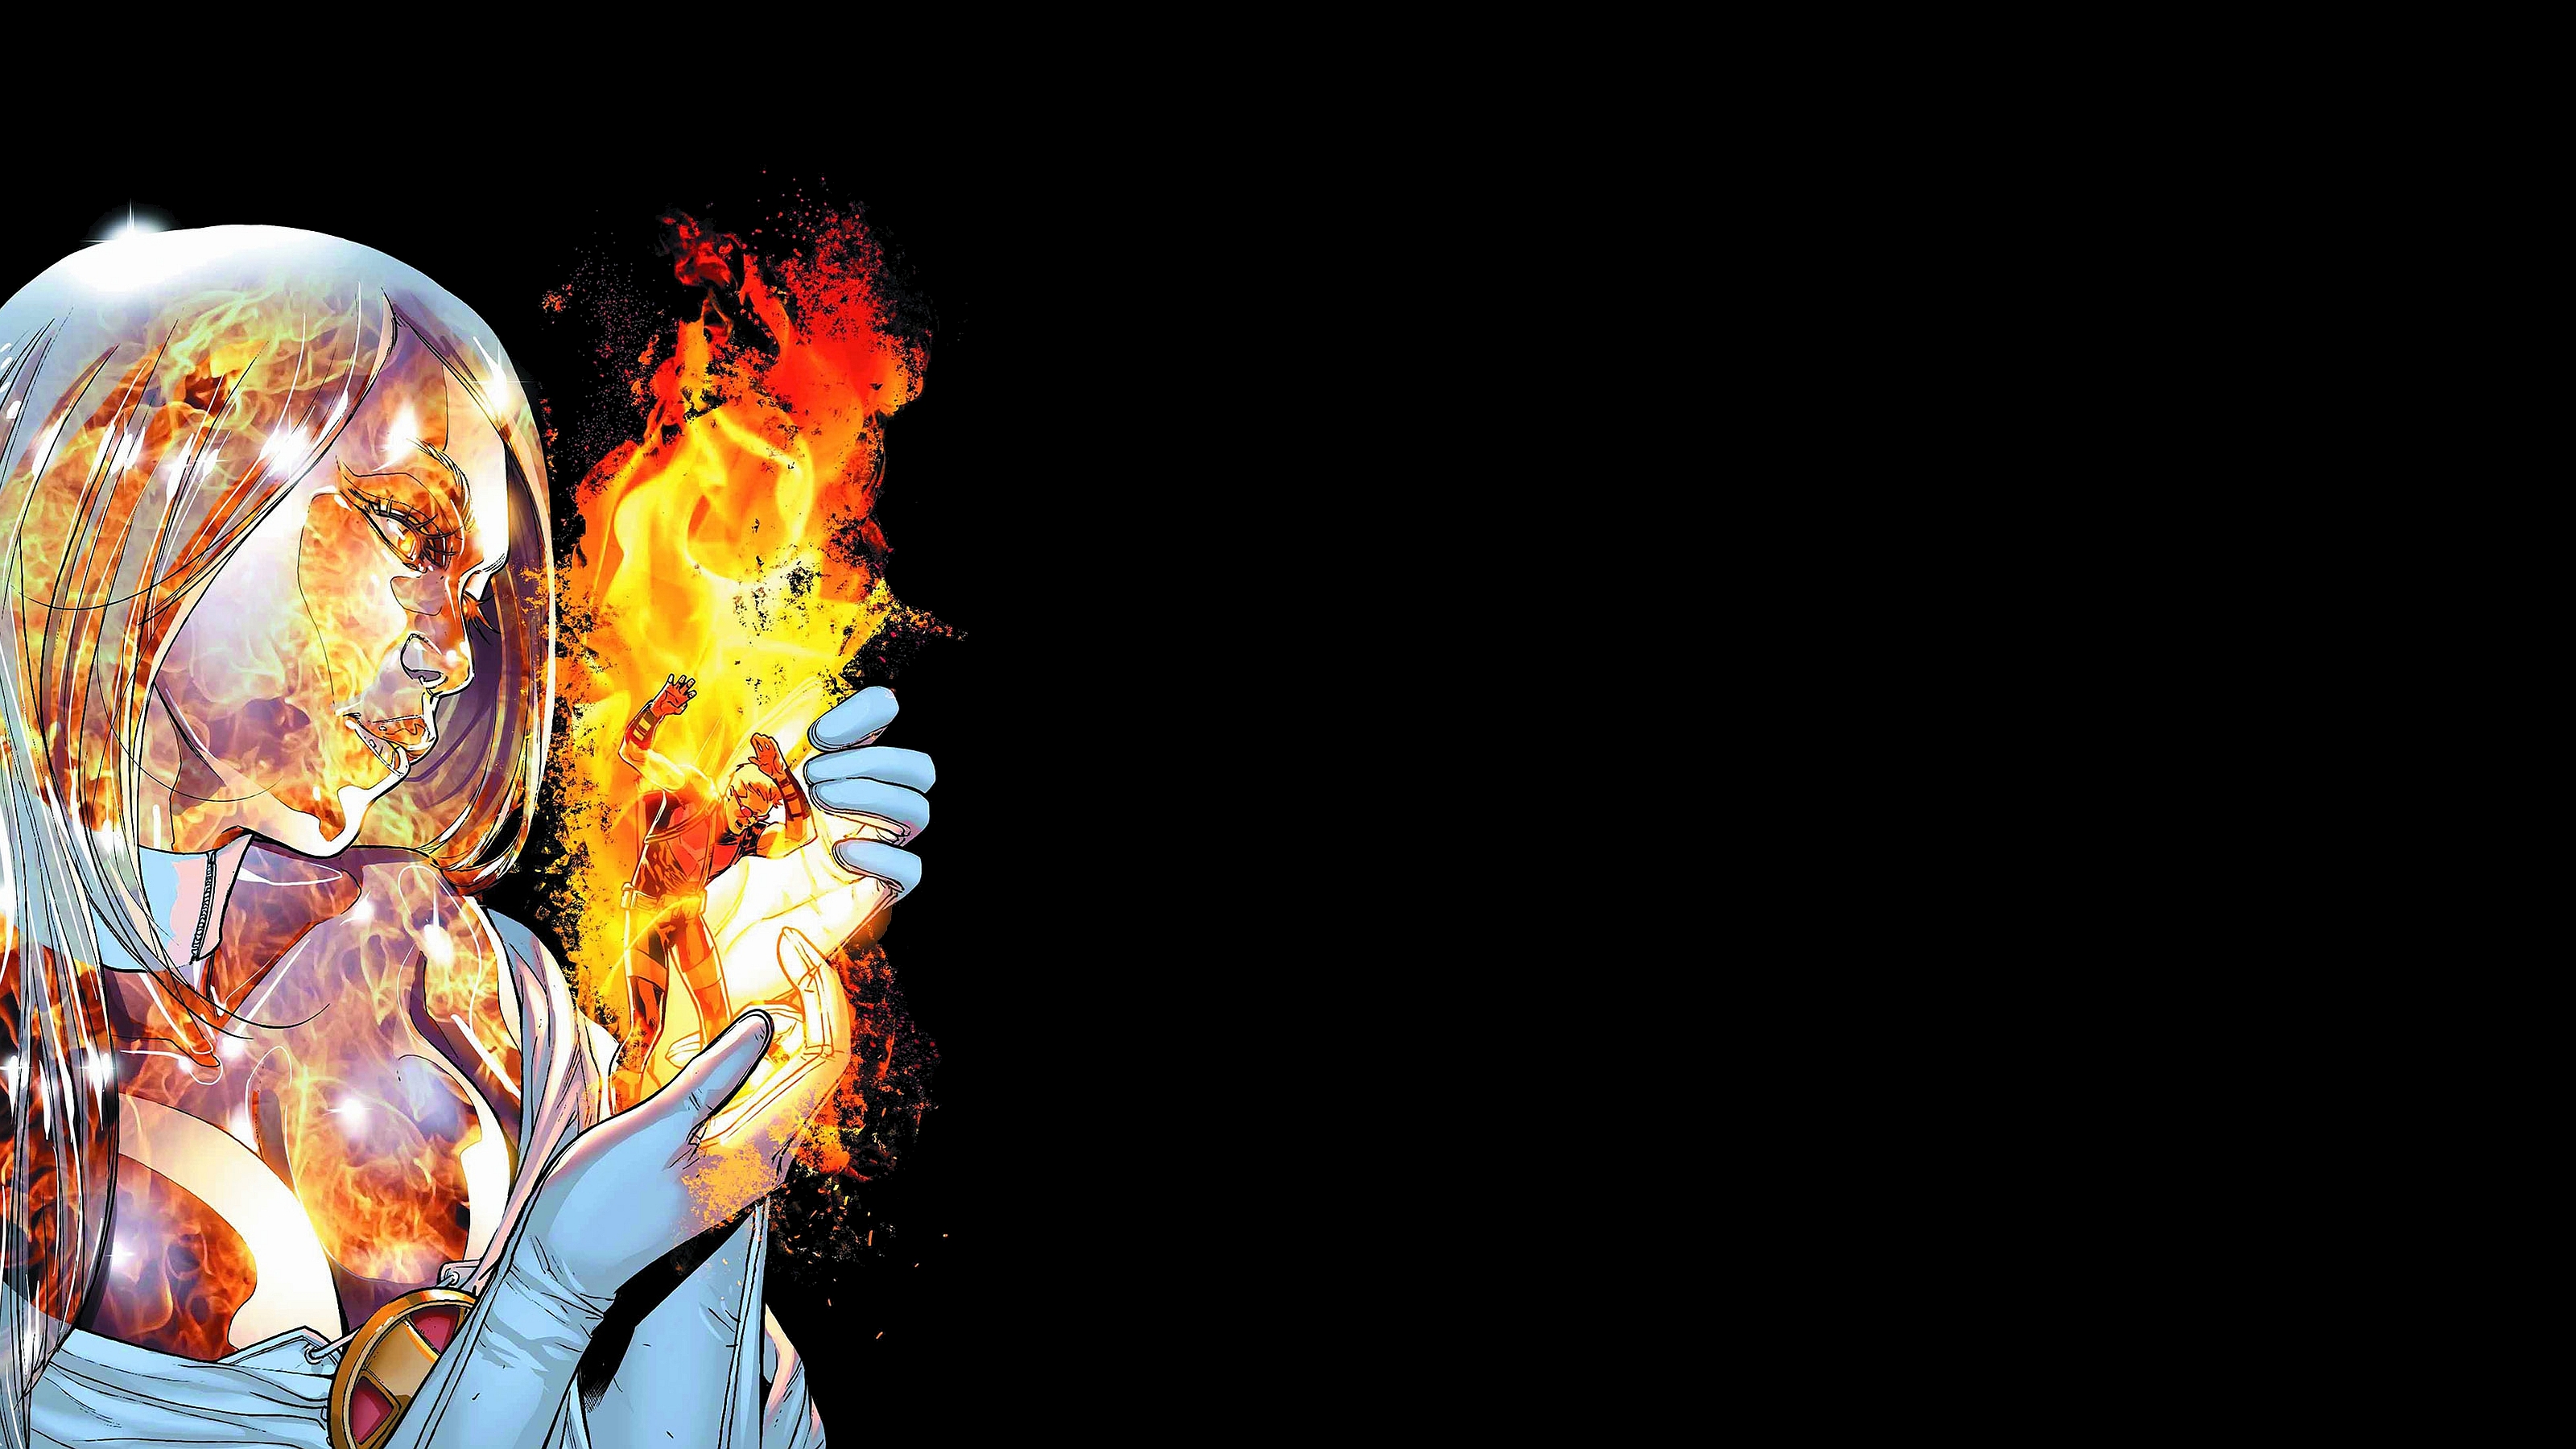 Clint Barton Emma Frost Fire Hawkeye Marvel Comics 3200x1800